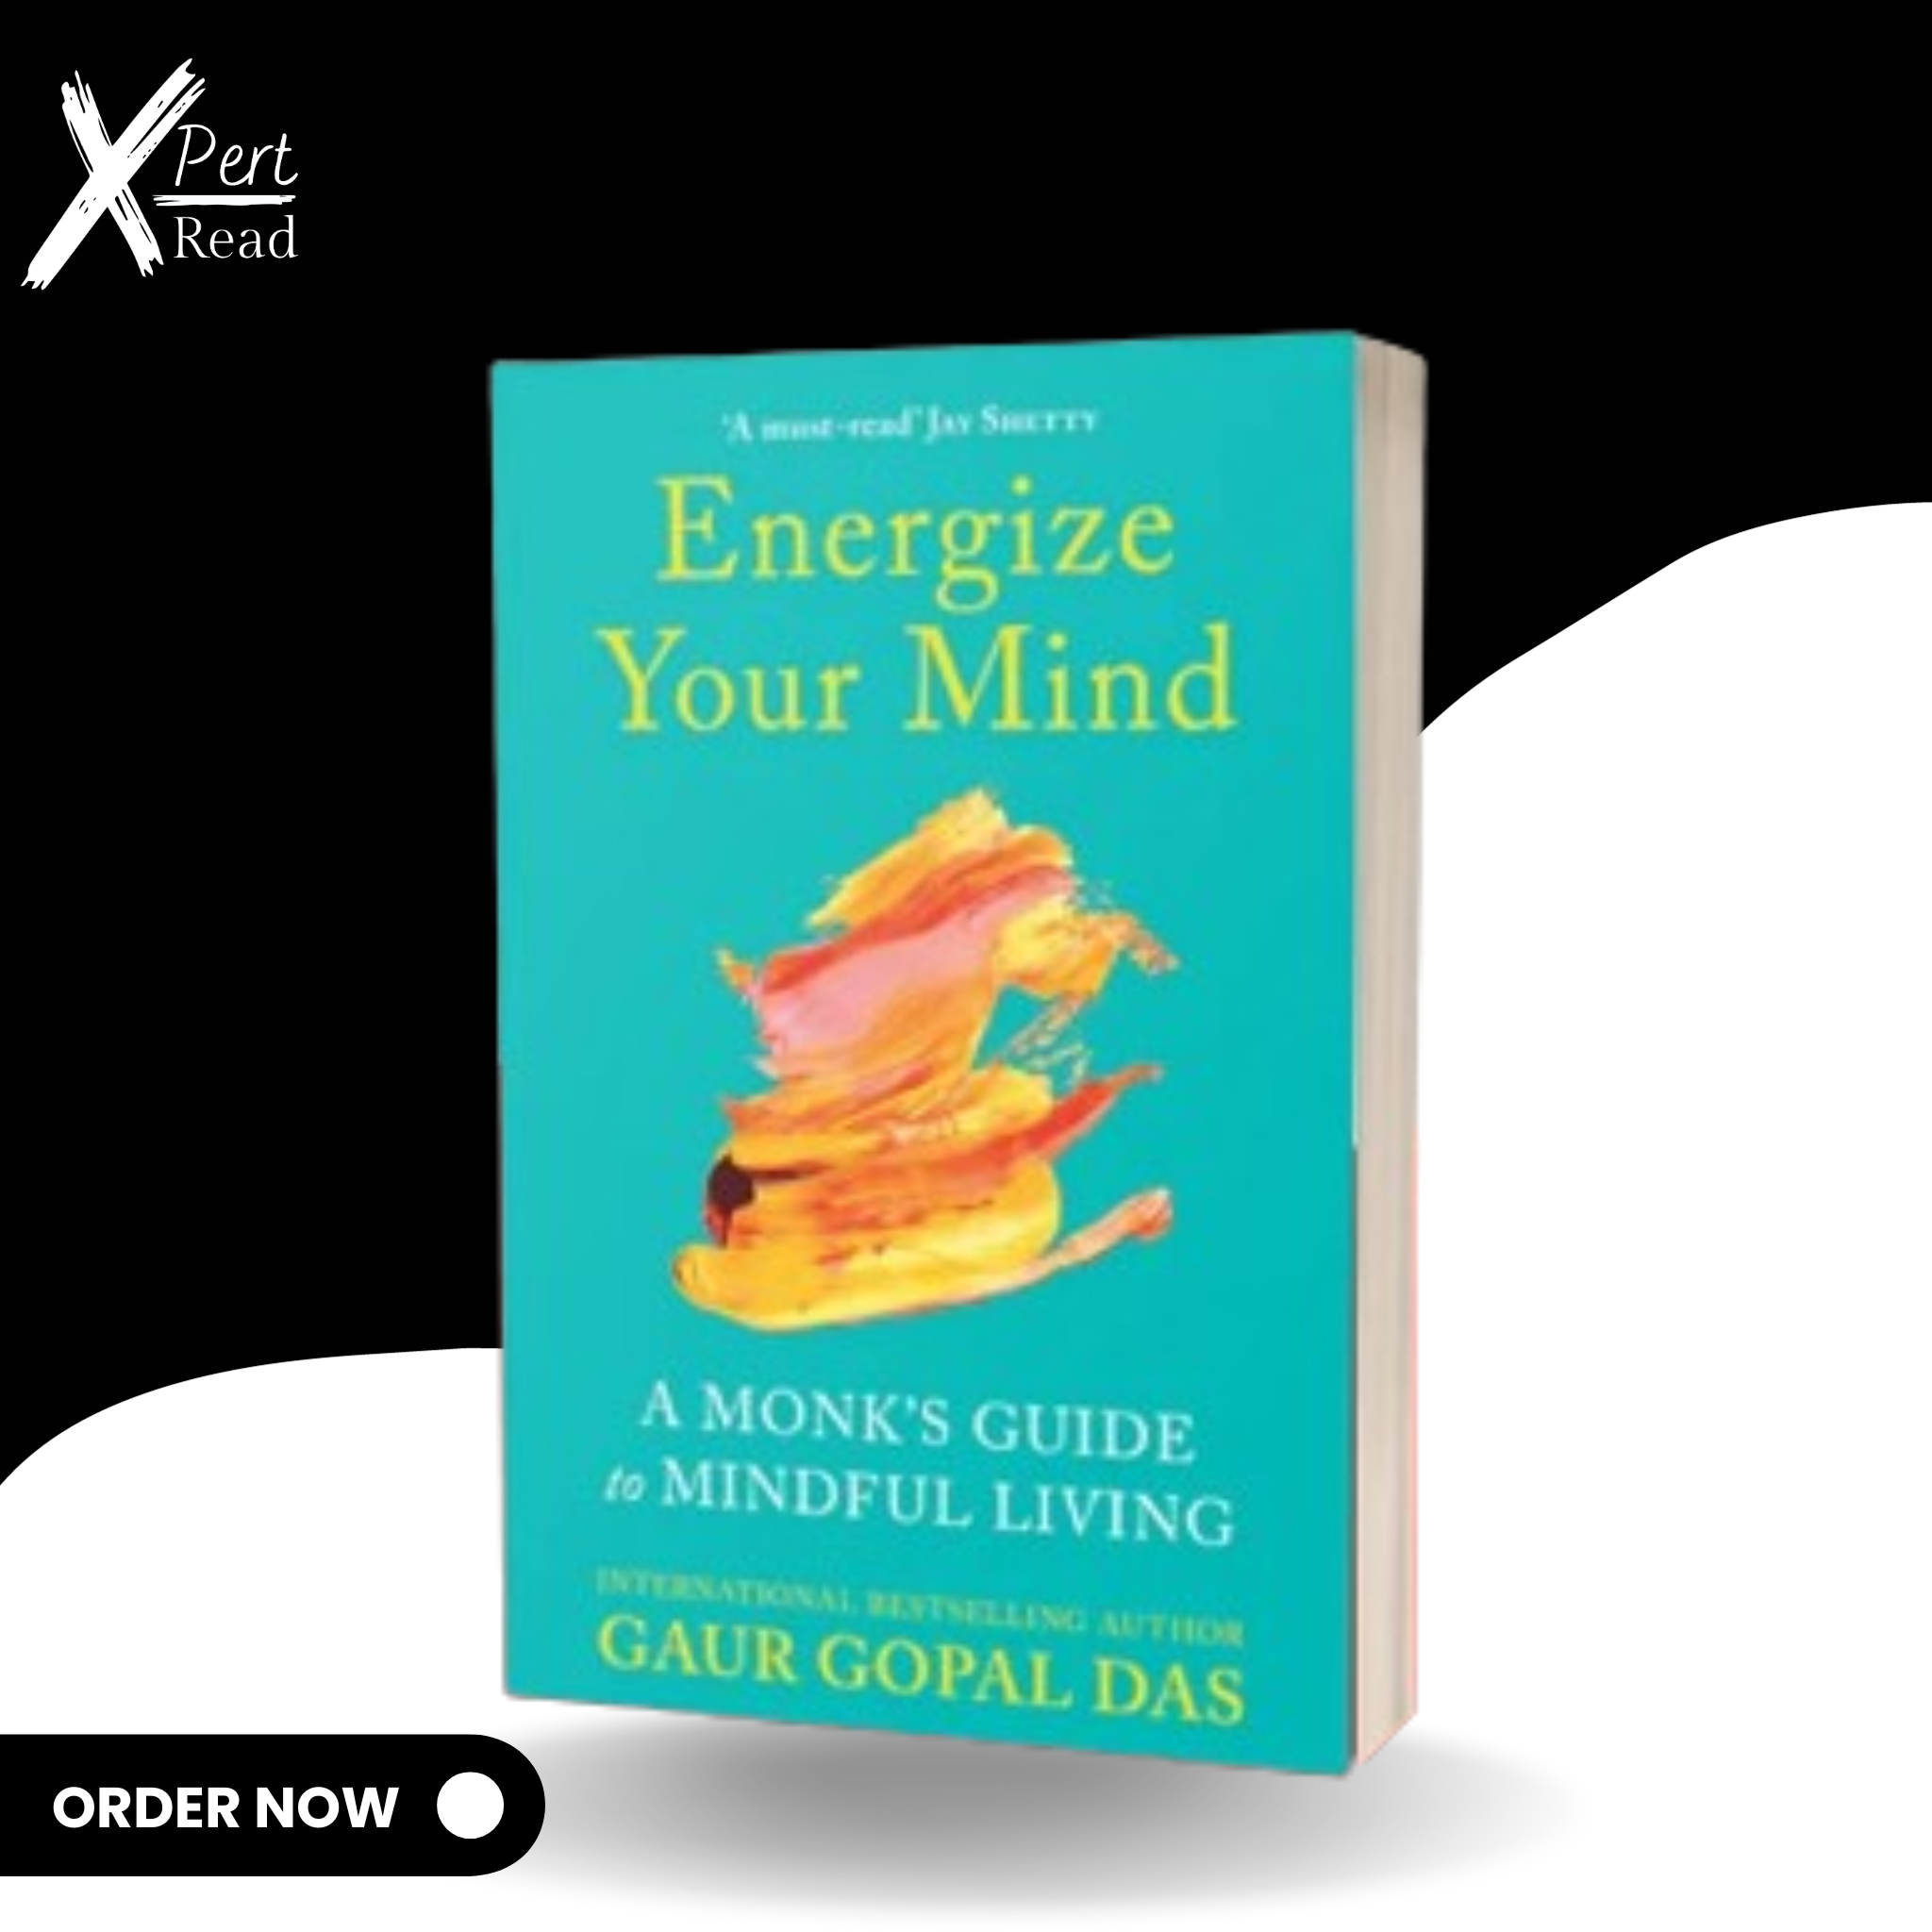 Energize Your Mind By GAUR GOPAL DAS